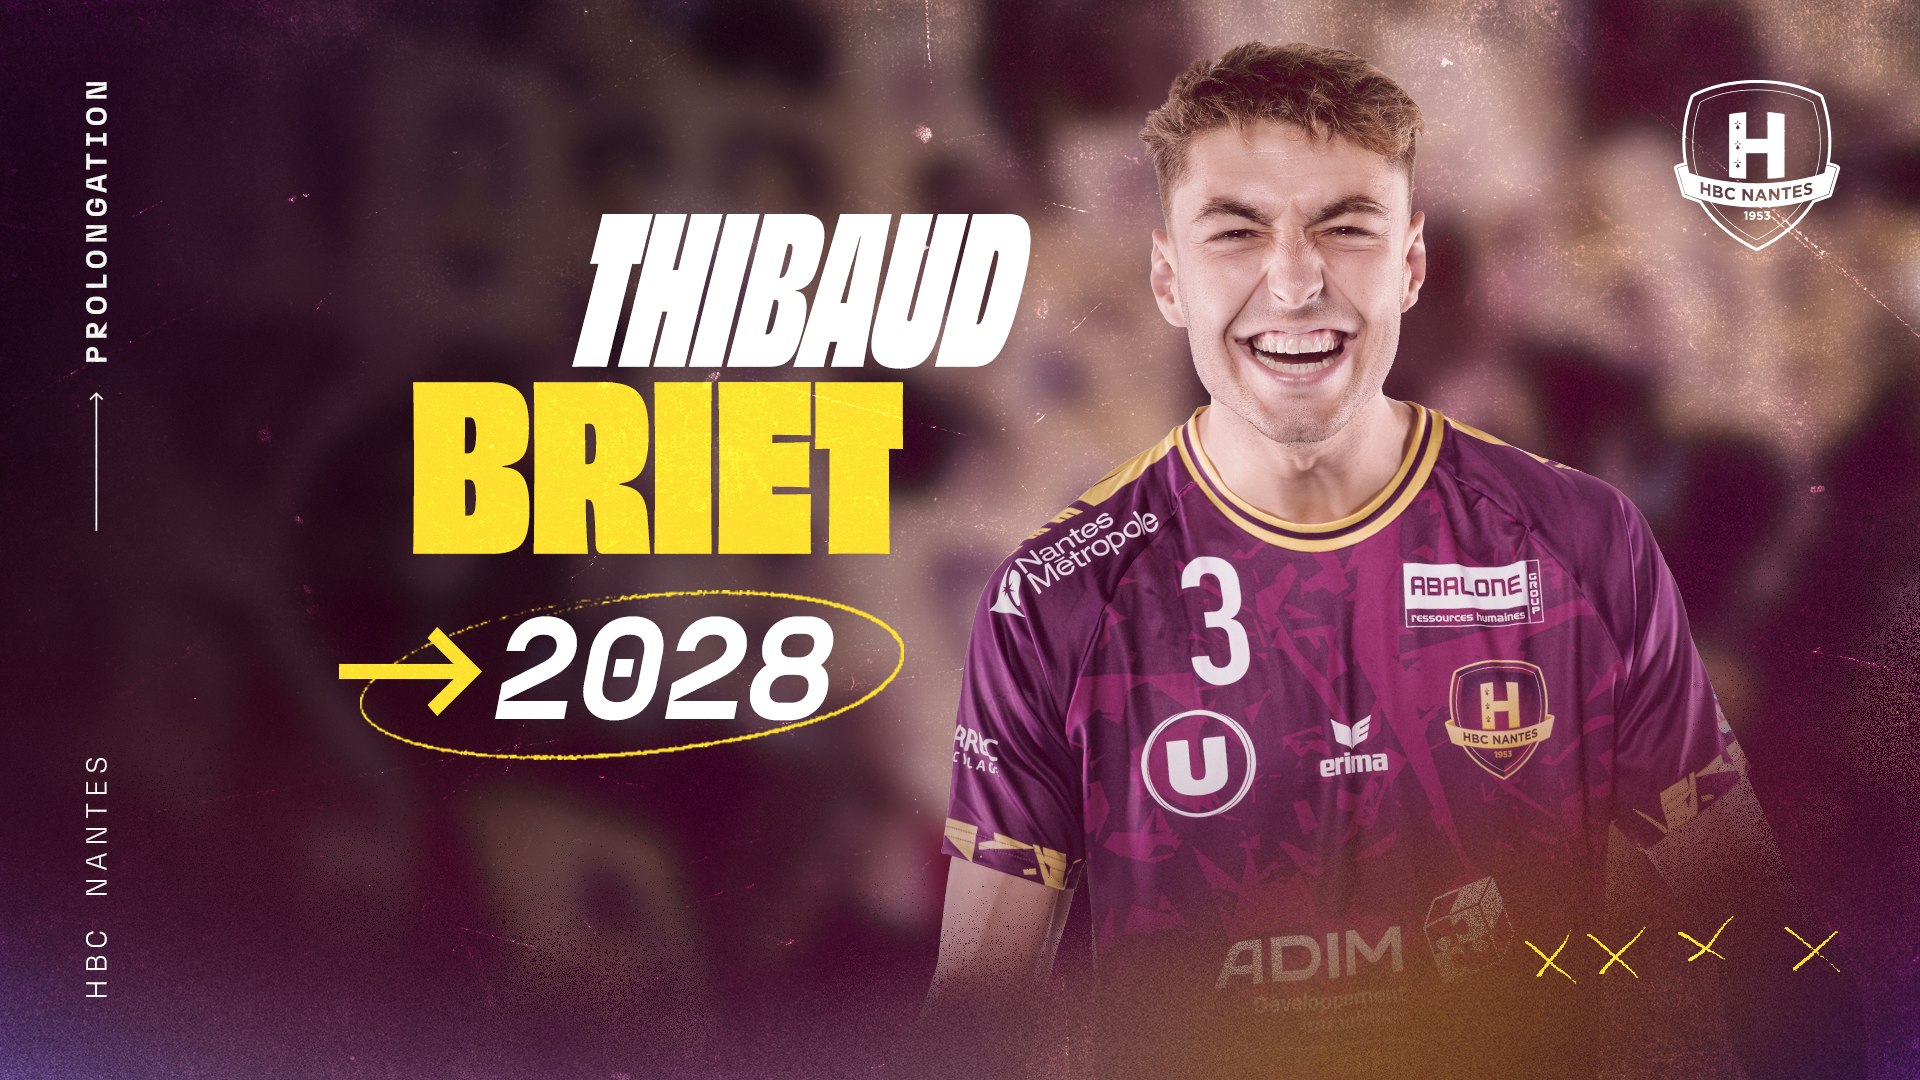 Thibaud Briet prolonge au "H" jusqu'en 2028